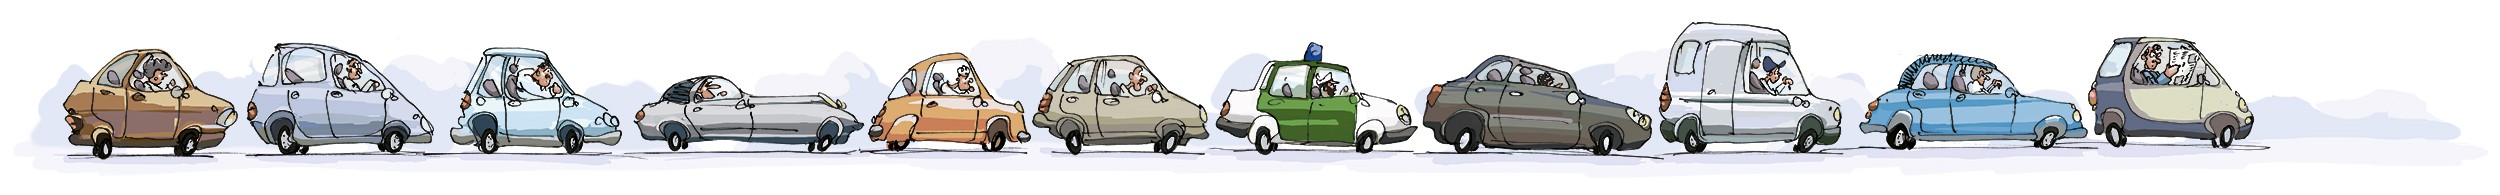 Stau Autobahn Mazda Motion Berlin Illustration Leserfragen ixtract Stefan Fichtel